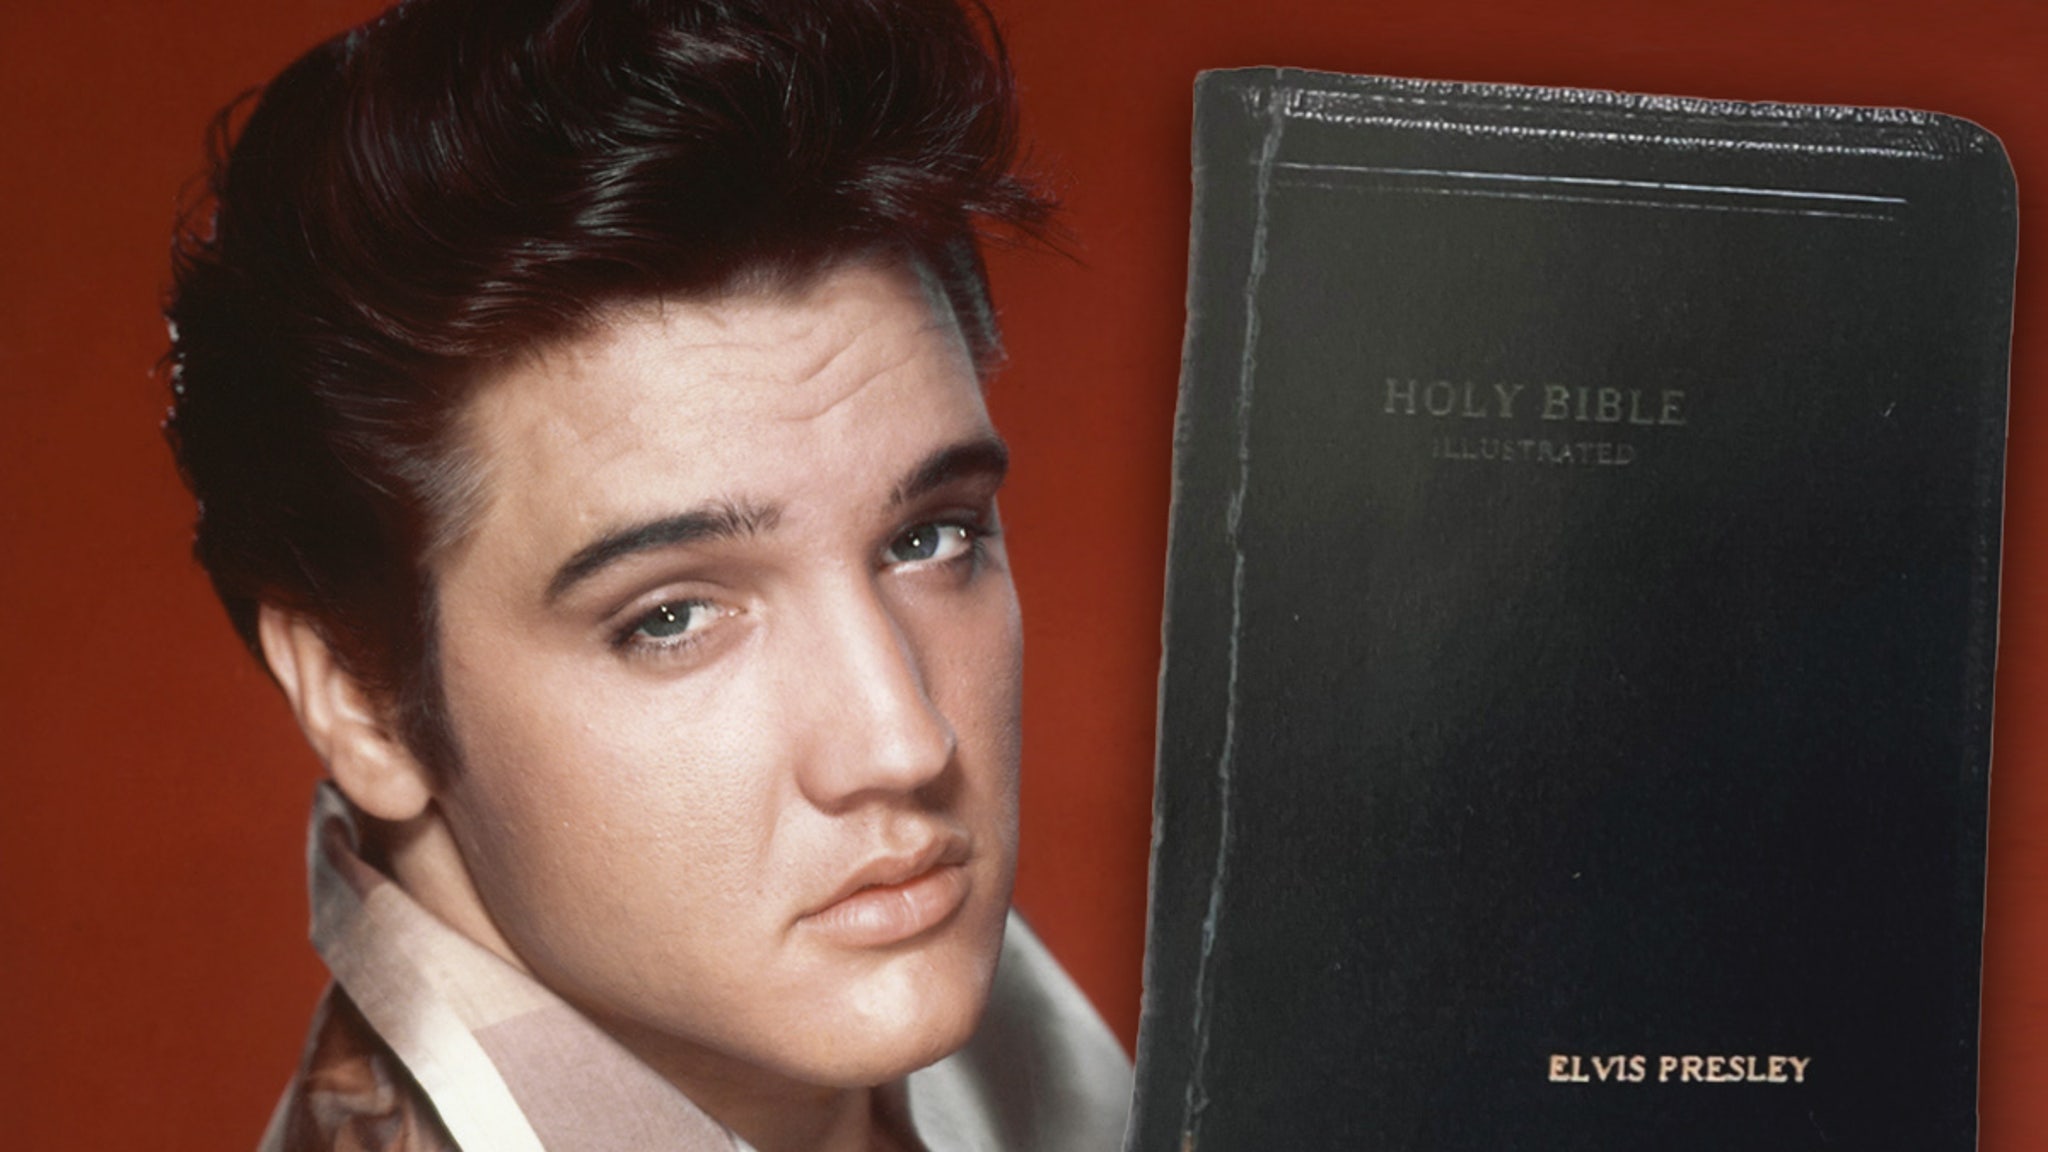 Elvis Presley’s Signed Bible for Sale at $95,000